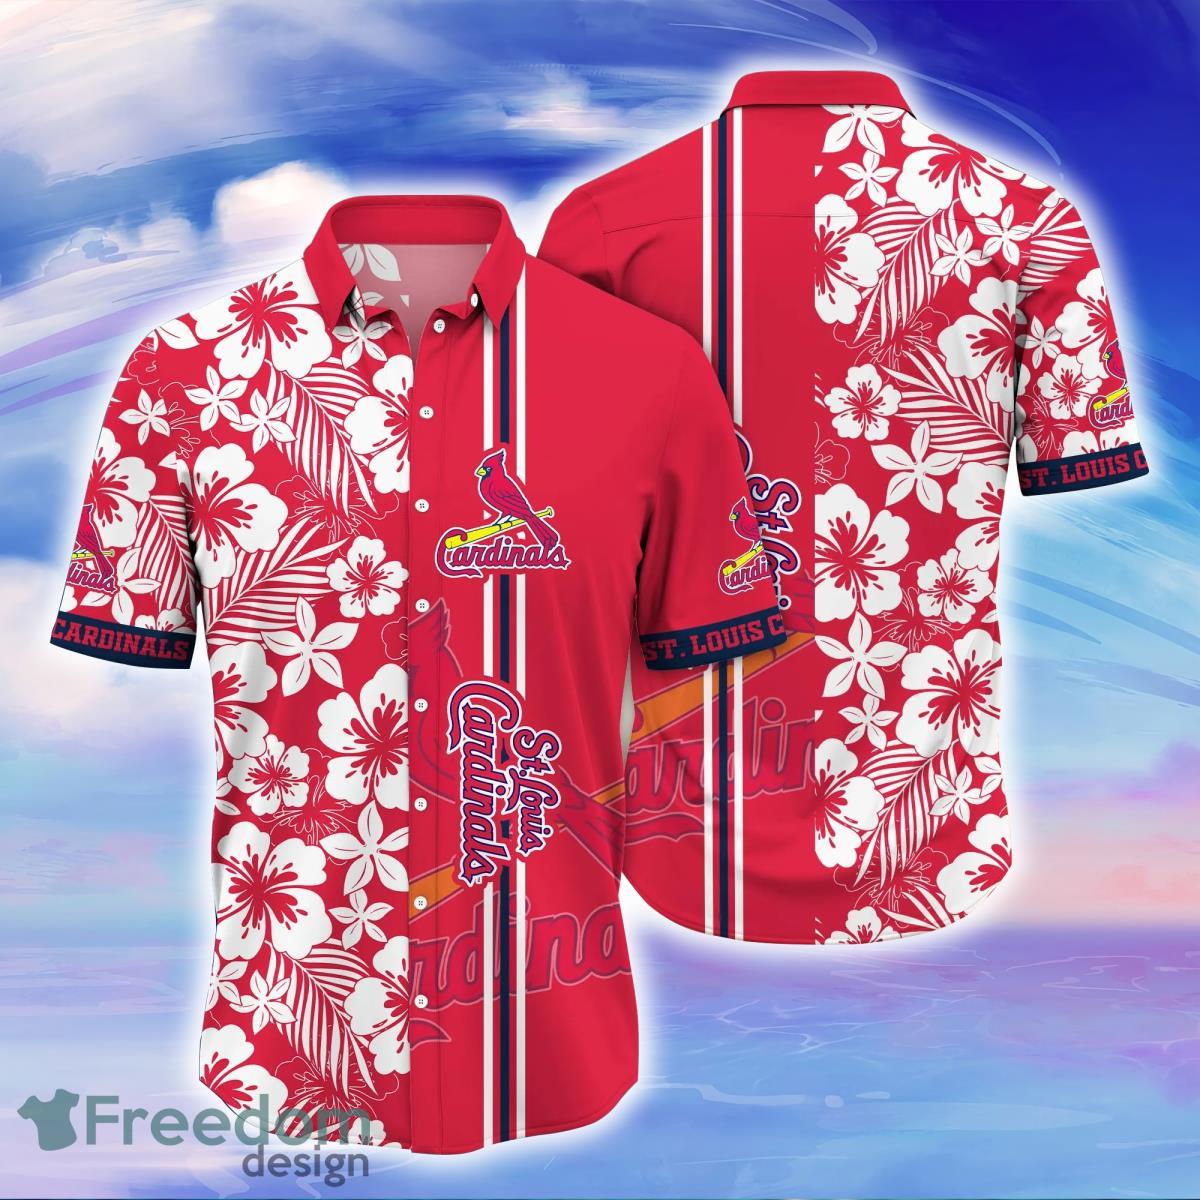 St Louis Cardinals Tropical Floral Custom Aloha Hawaiian Shirt